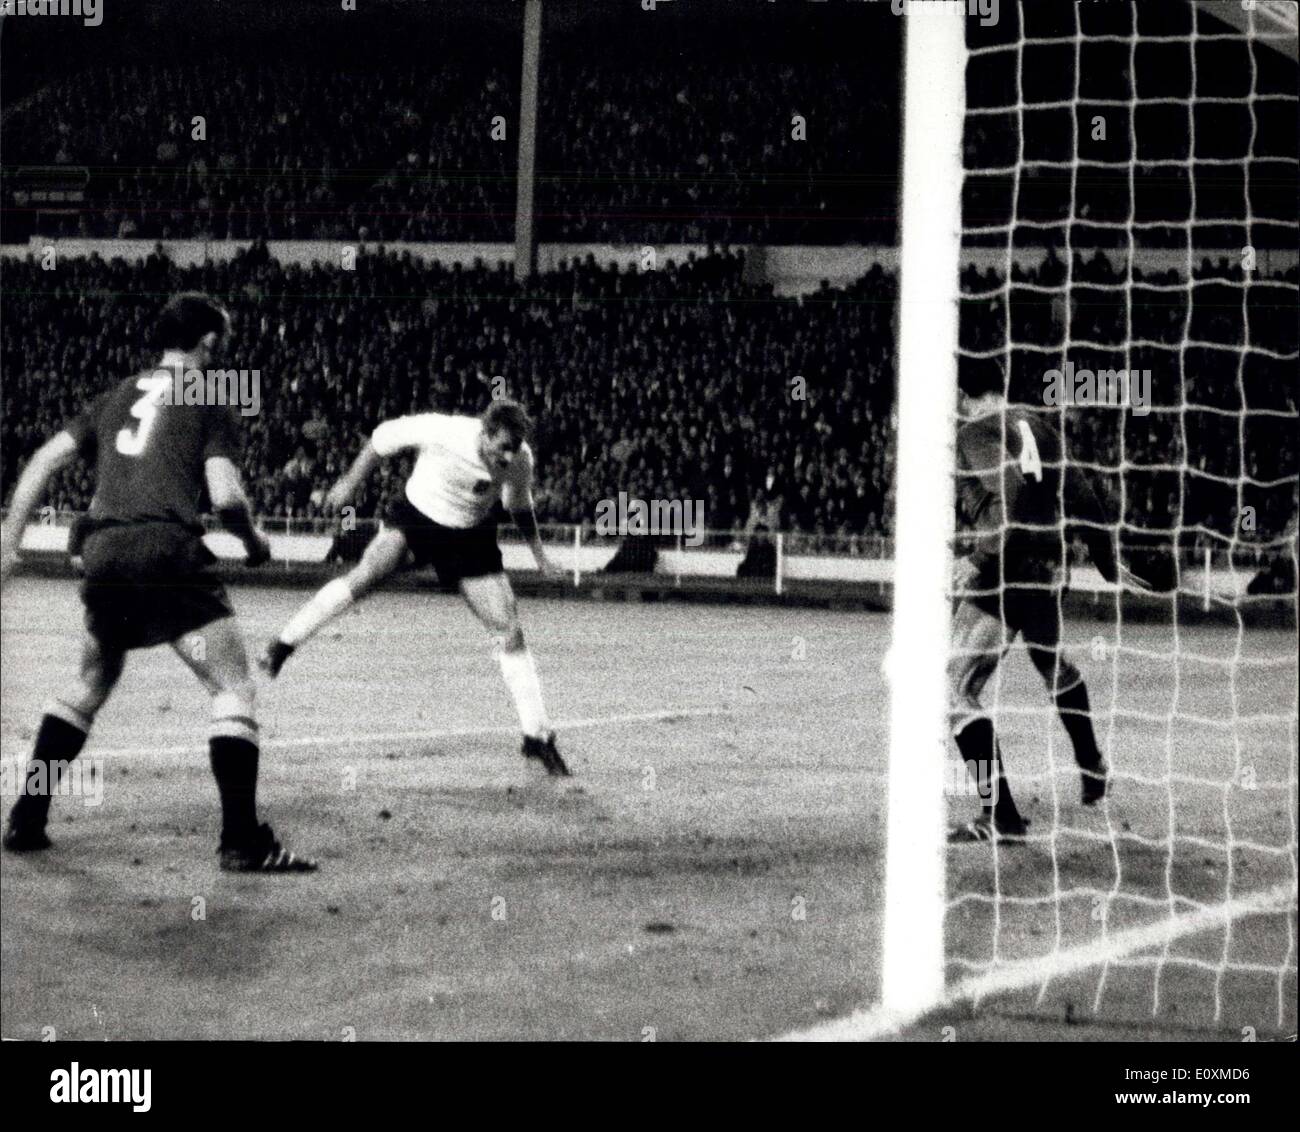 Mayo 25, 1967 - Inglaterra venció a España 2-0 en Wembley. En el partido de fútbol internacional en Wembley anoche Inglaterra venció a España 2-0. Muestra fotográfica: cazar la Inglaterra interior hacia adelante visto título segundo gol de Inglaterra durante el juego en el estadio de Wembley anoche. Foto de stock